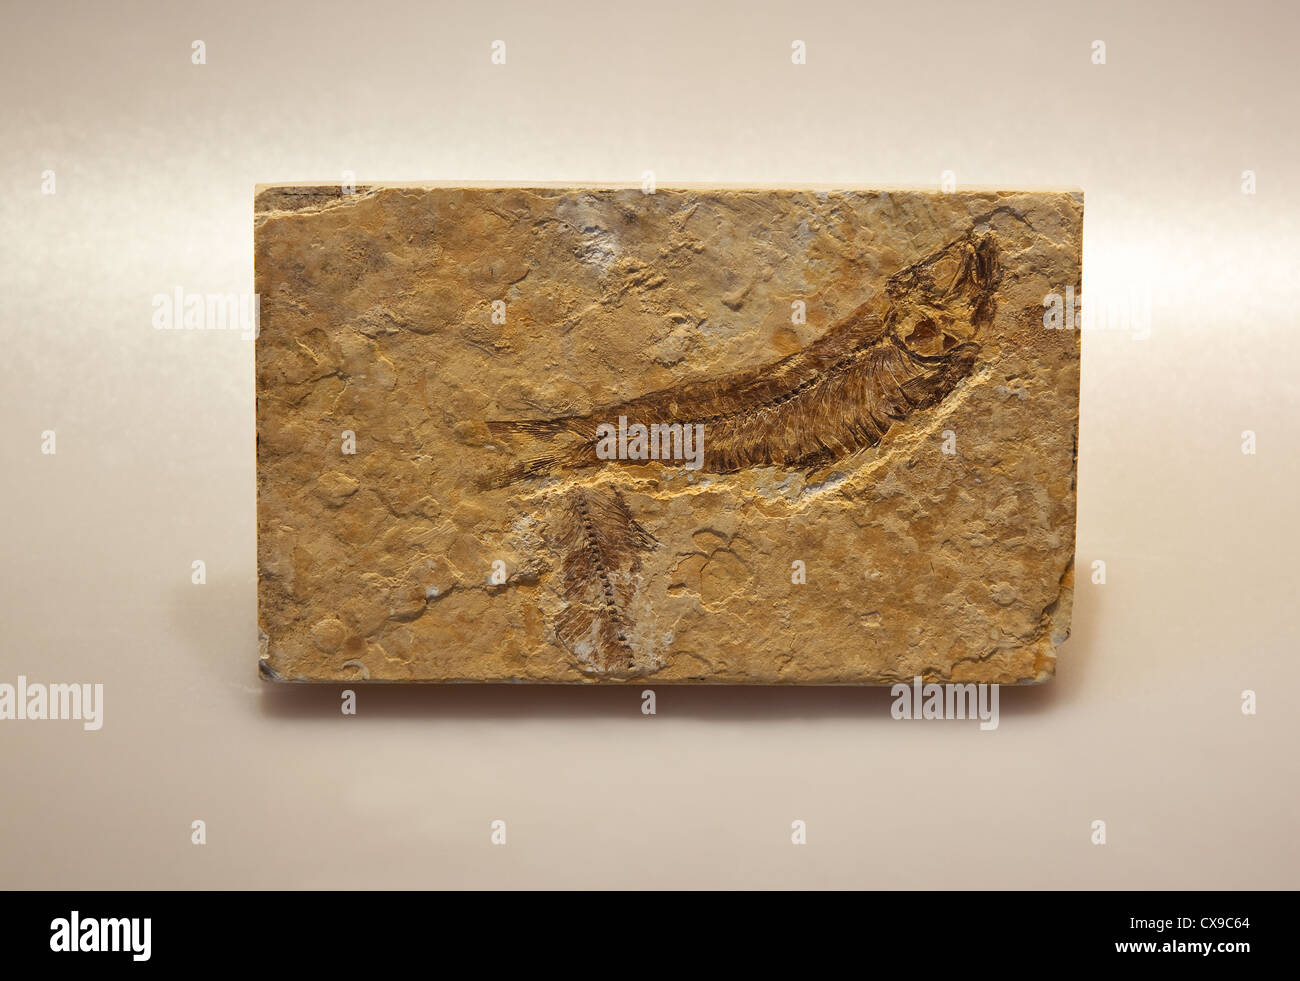 Fossile di Dastilbe  pesci fossili del Cretaceo inferiore, circa 110 milioni di anni fa. Marocchino fossili di pietra Foto Stock